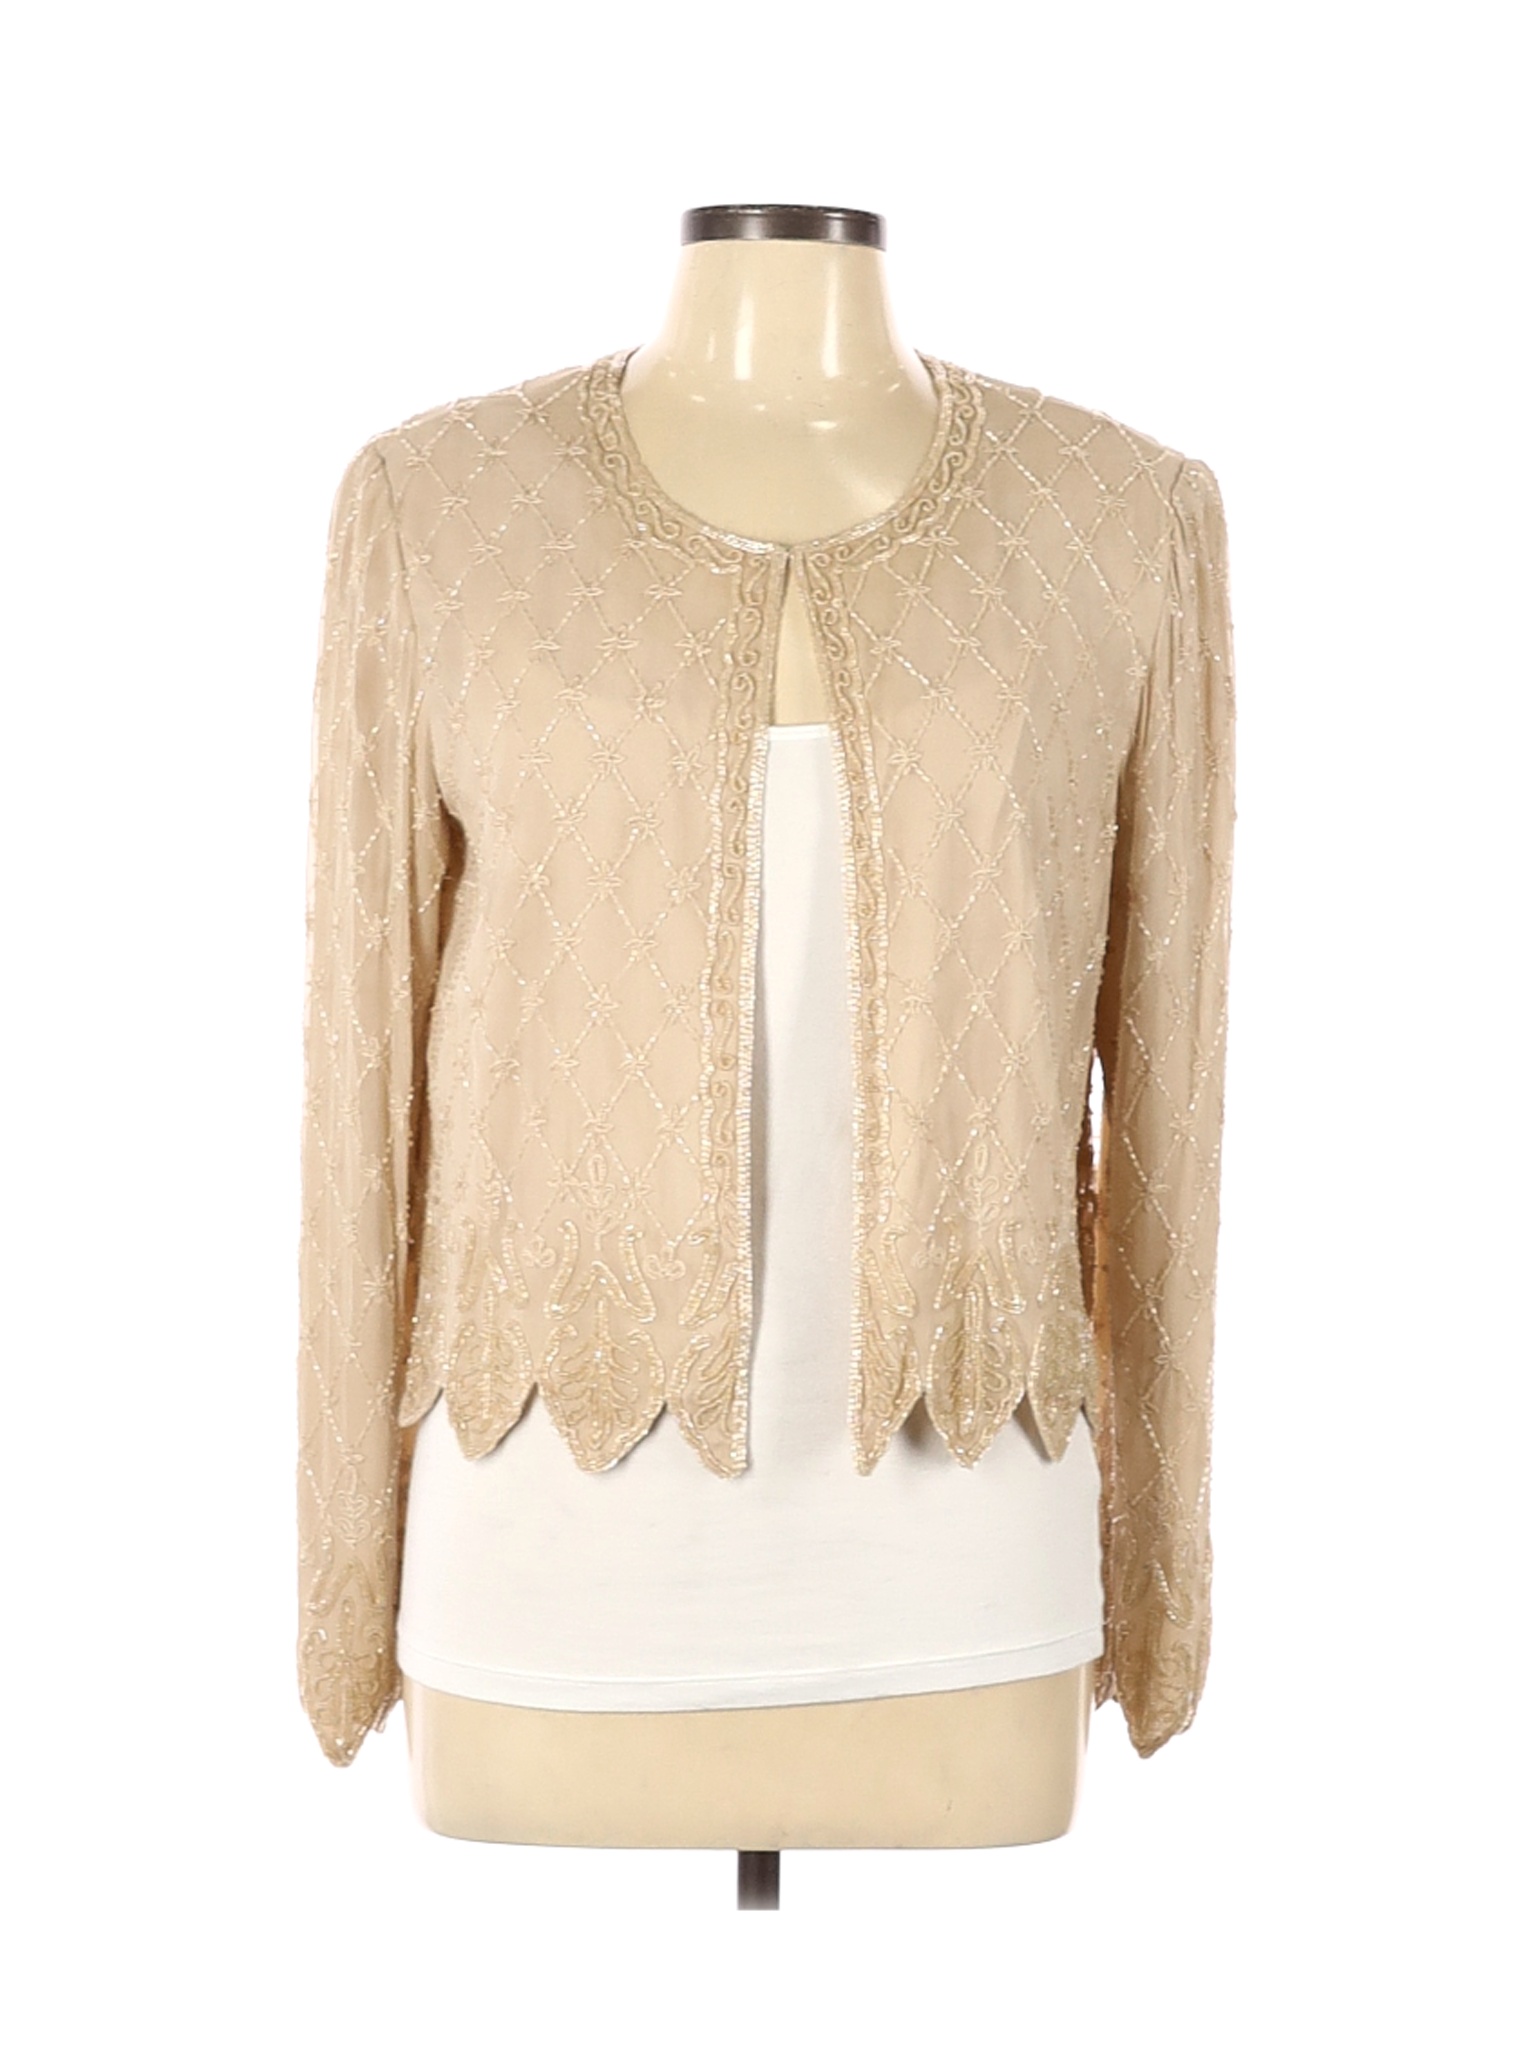 Adrianna Papell Women Brown Silk Blazer 12 | eBay